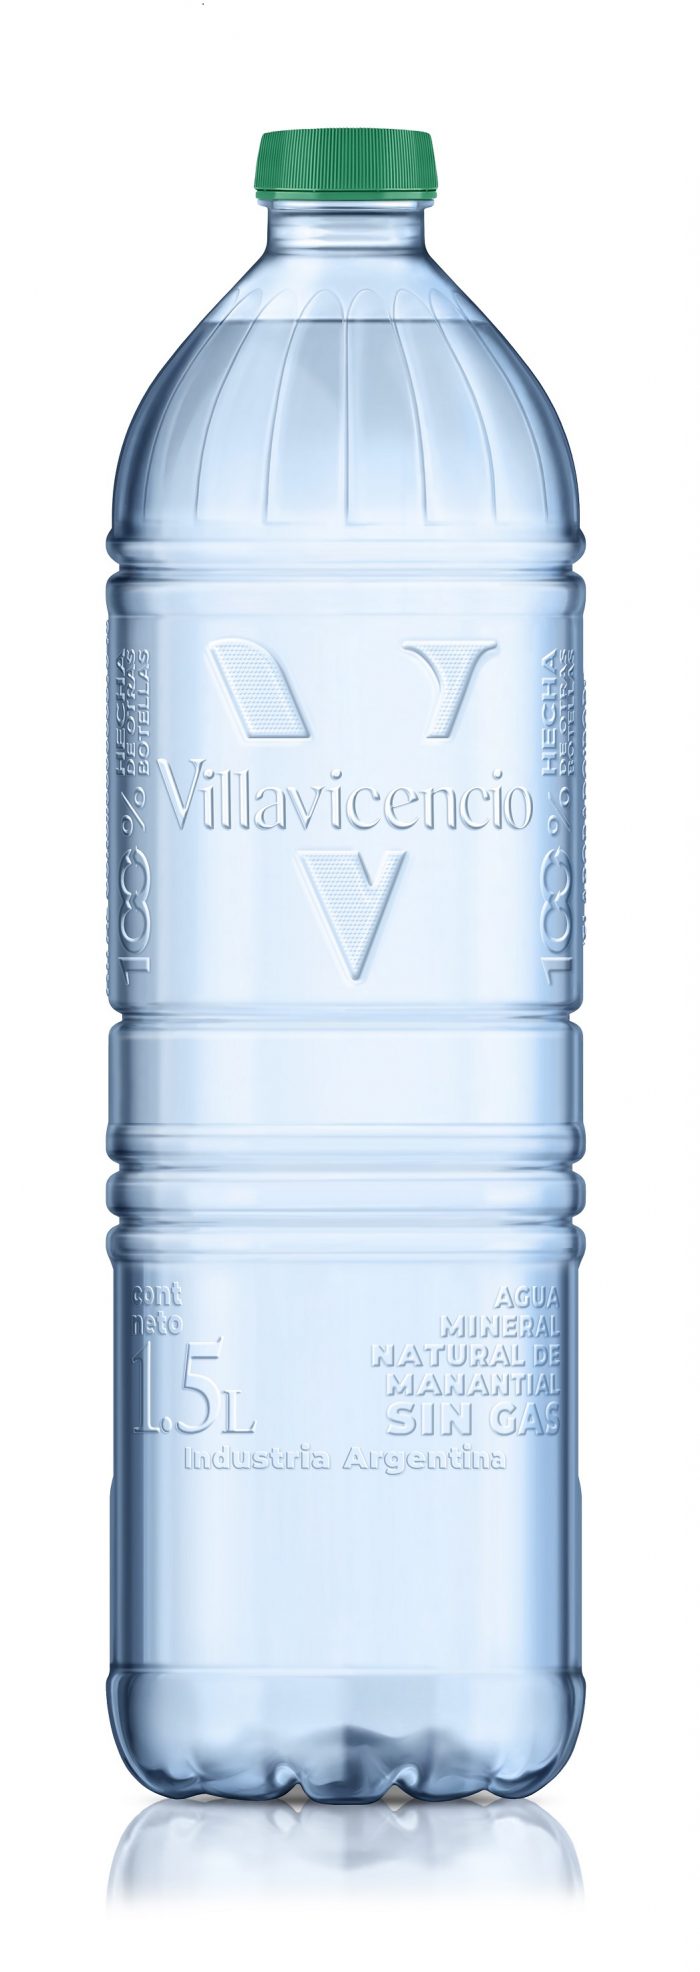 Villavicencio image